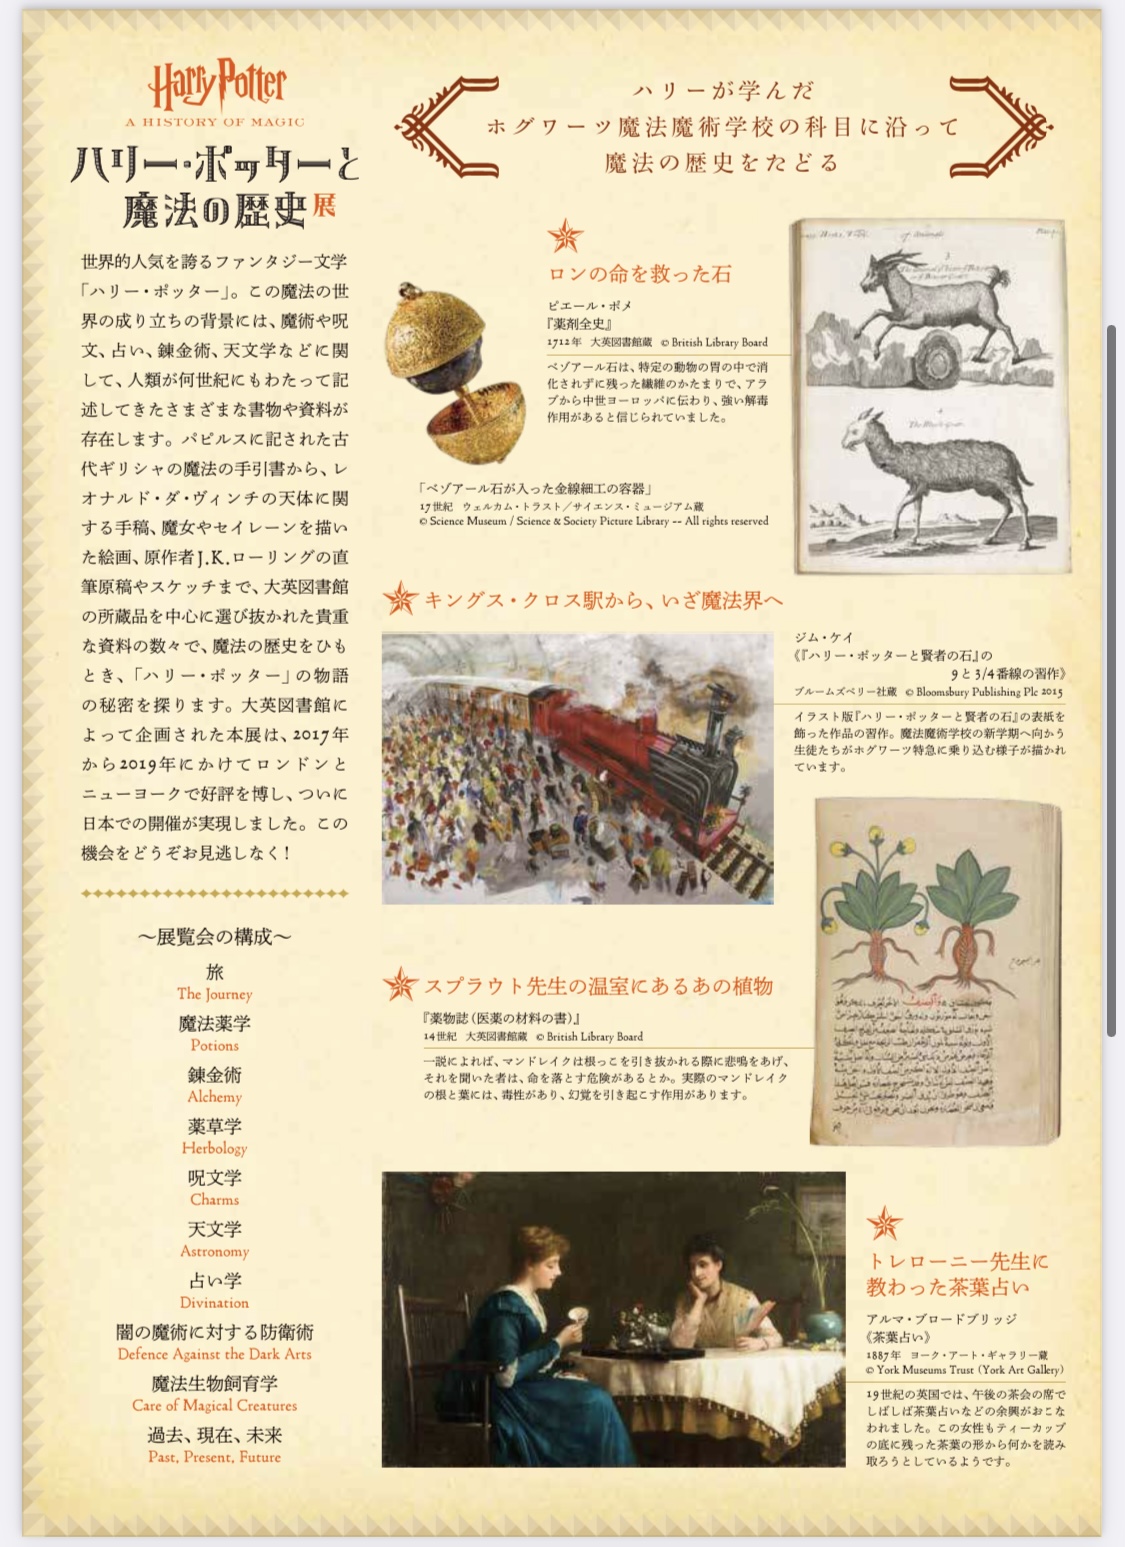 ハリー ポッターと魔法の歴史 東京ステーションギャラリー 一般社団法人 志乃書画協会